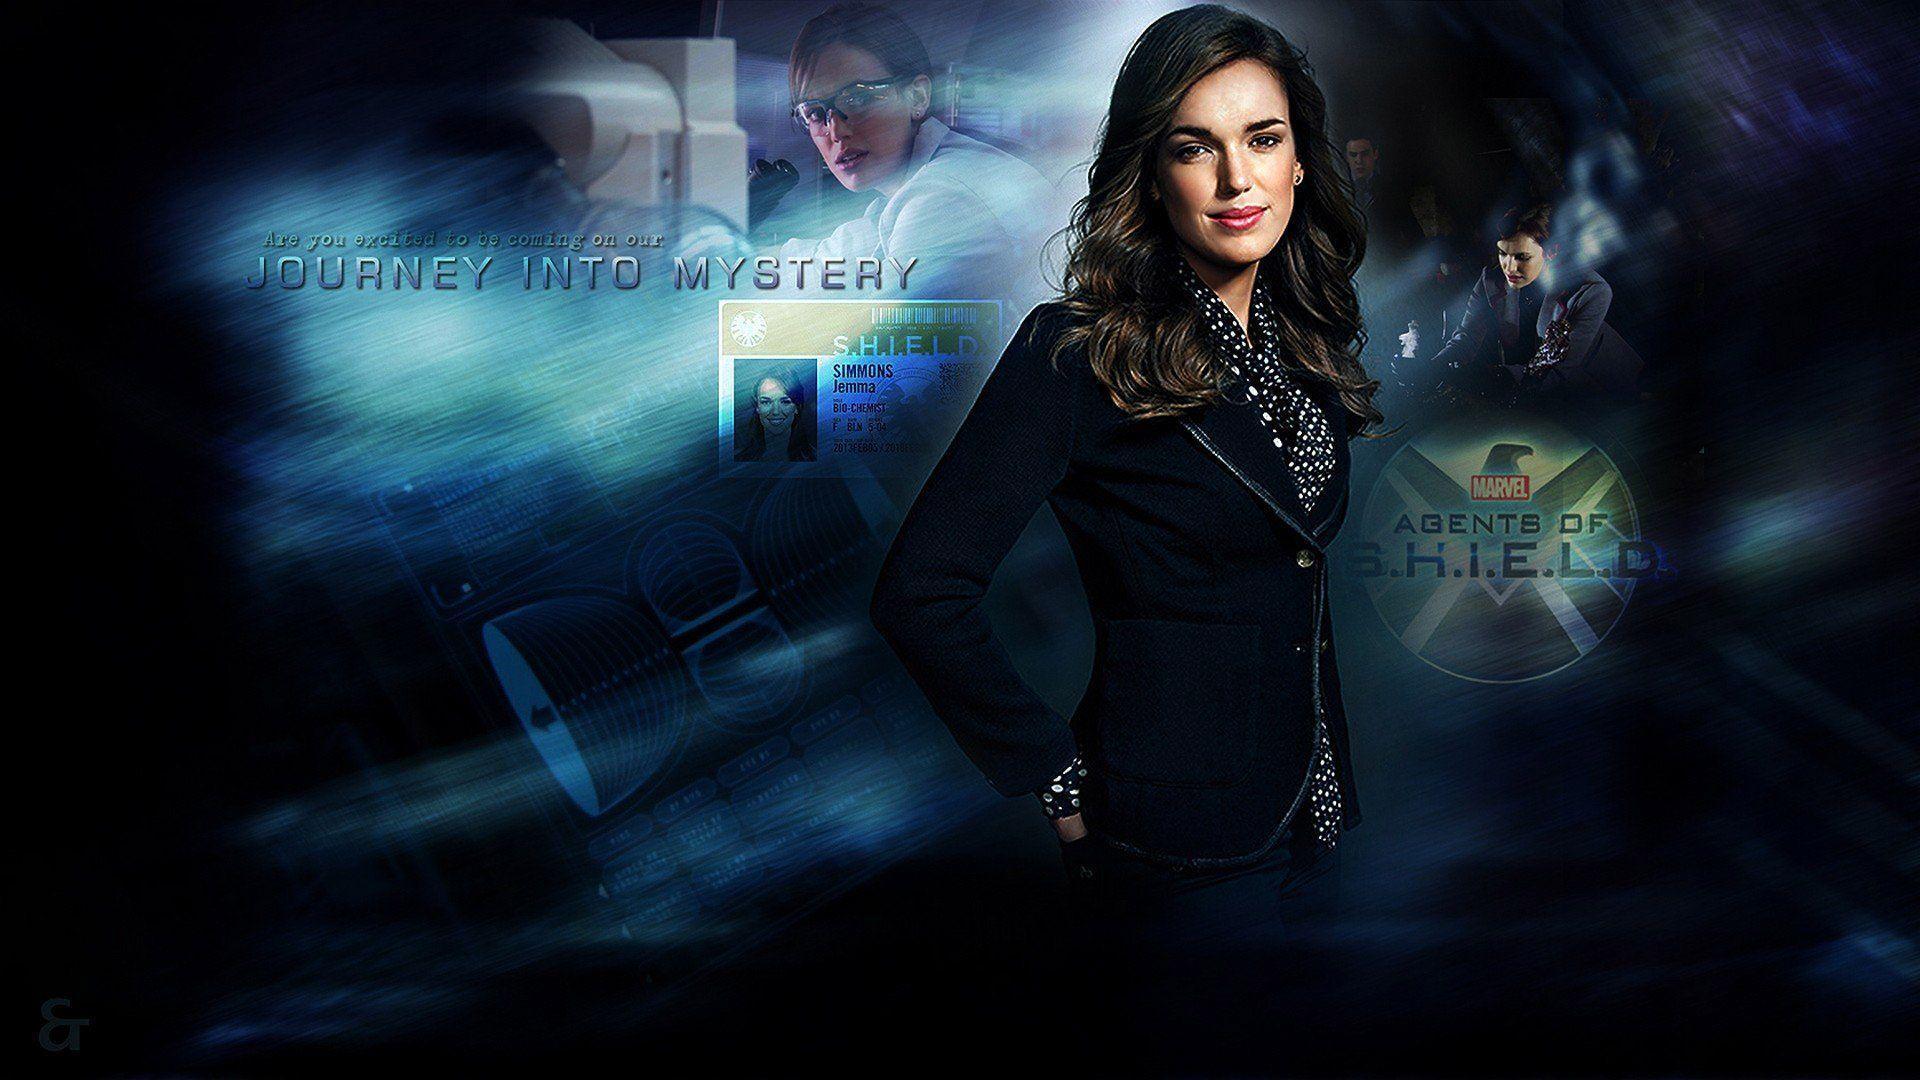 Agents of S.H.I.E.L.D wallpaper HD free Download for Desktop